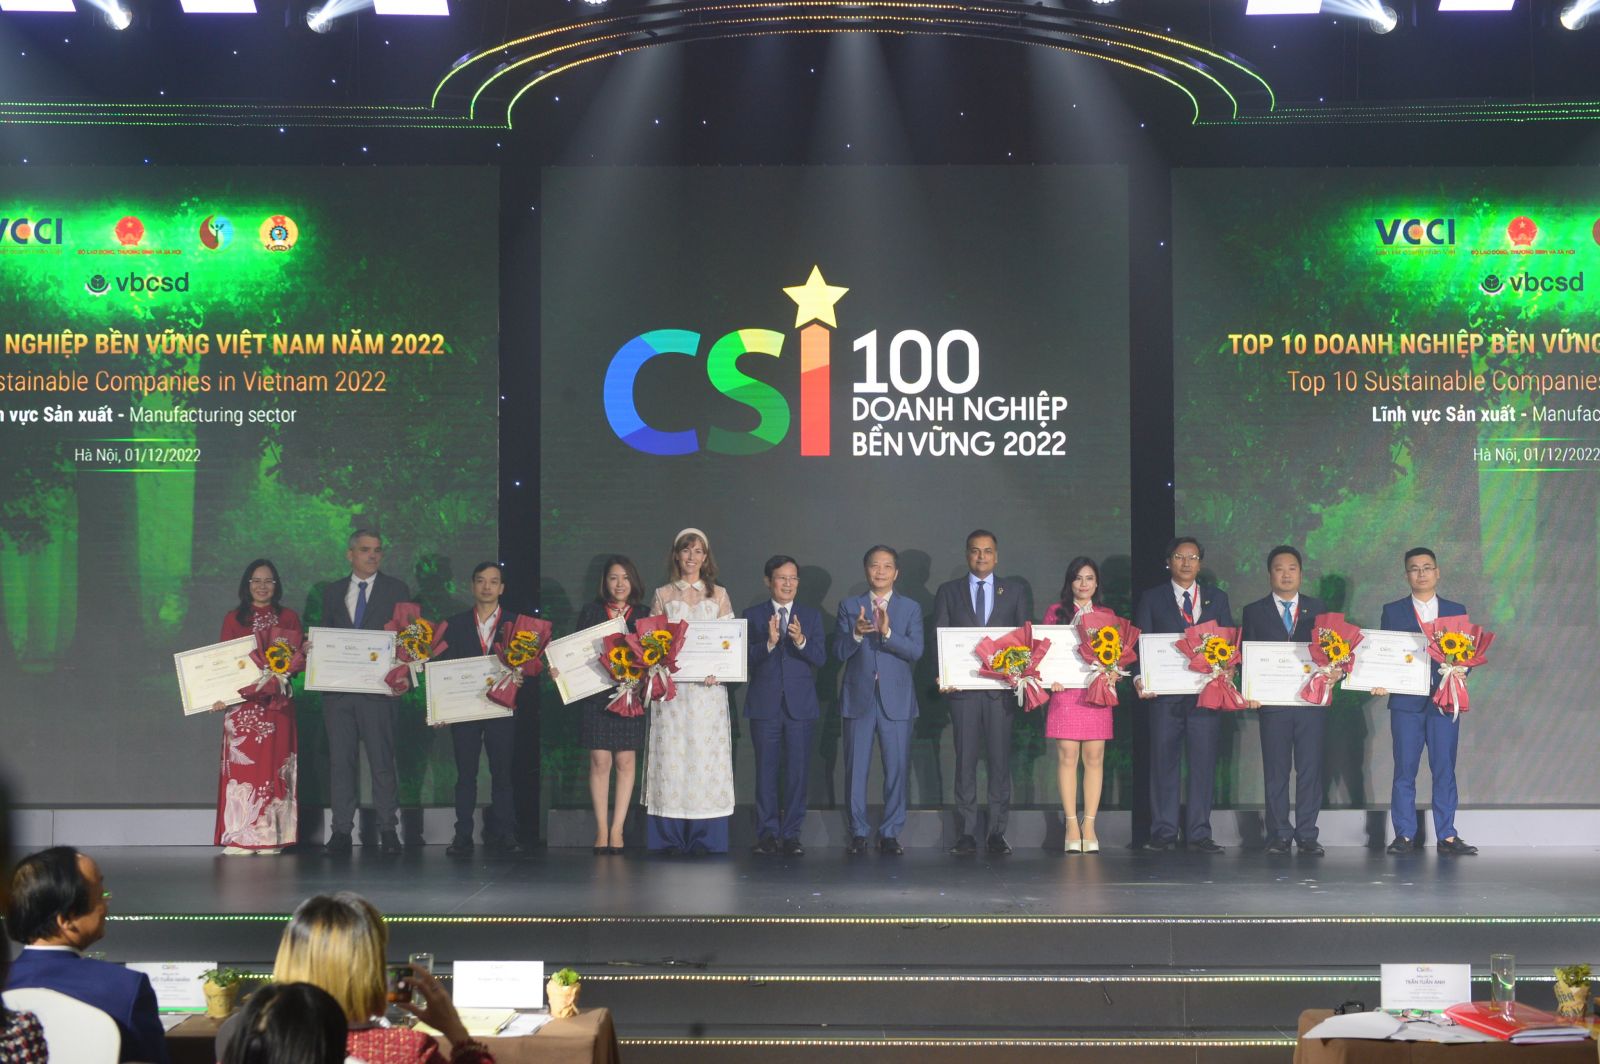 Ông Trần Tuấn Anh, Trưởng Ban Kinh tế Trung ương và ông Phạm Tấn Công, Chủ tịch VCCI trao chứng nhận cho Top10 lĩnh vực sản xuất.